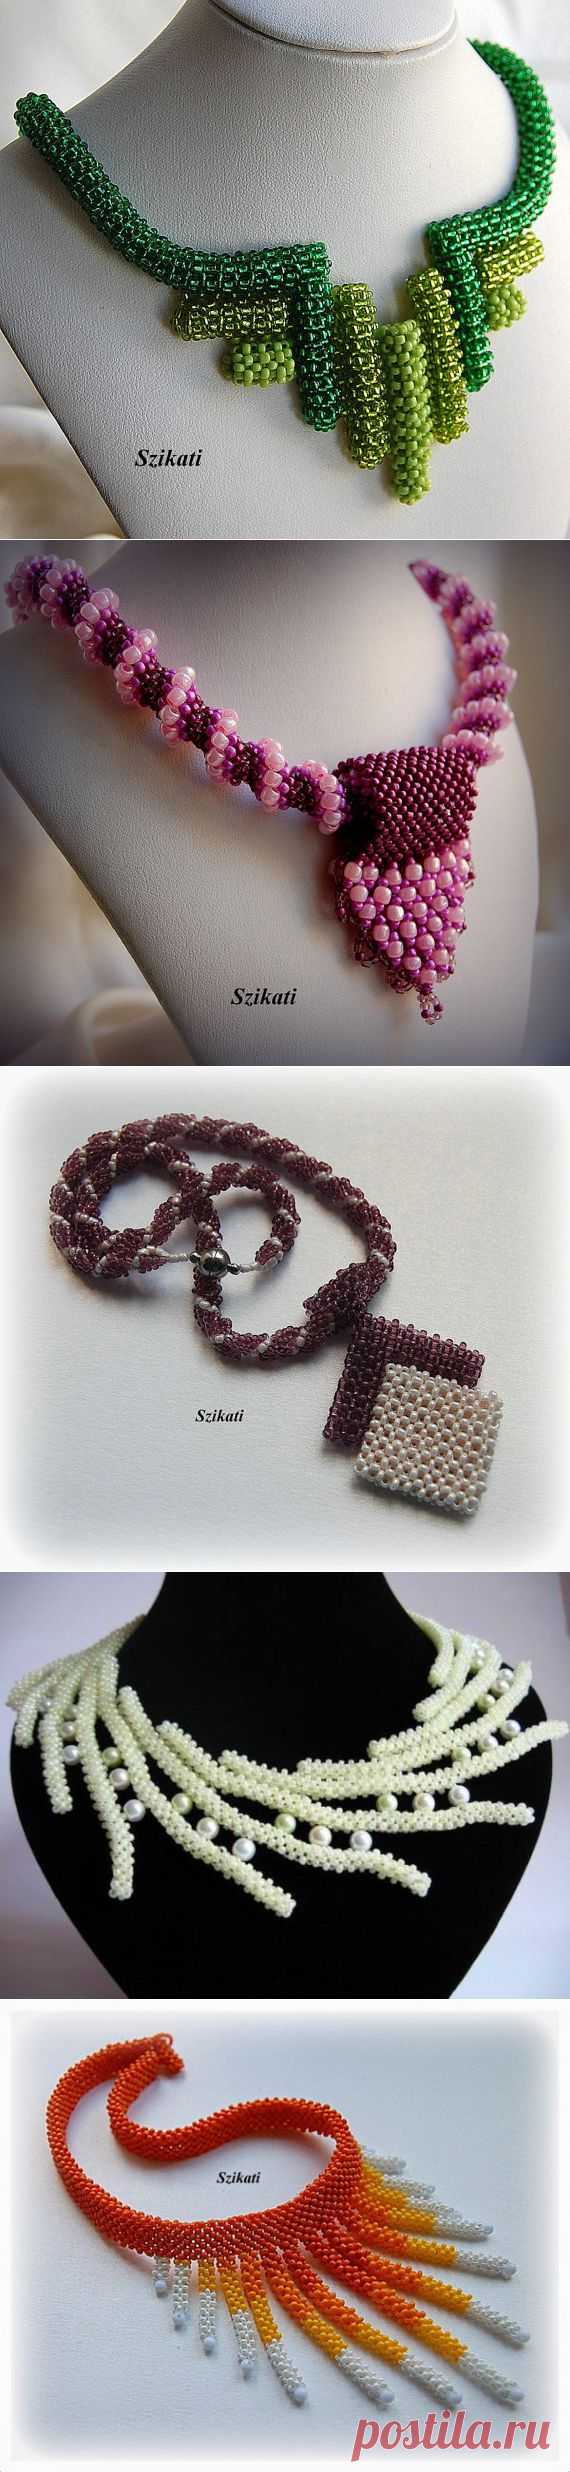 Жгуты и ожерелья из жгутов от Szikati - Рукоделие